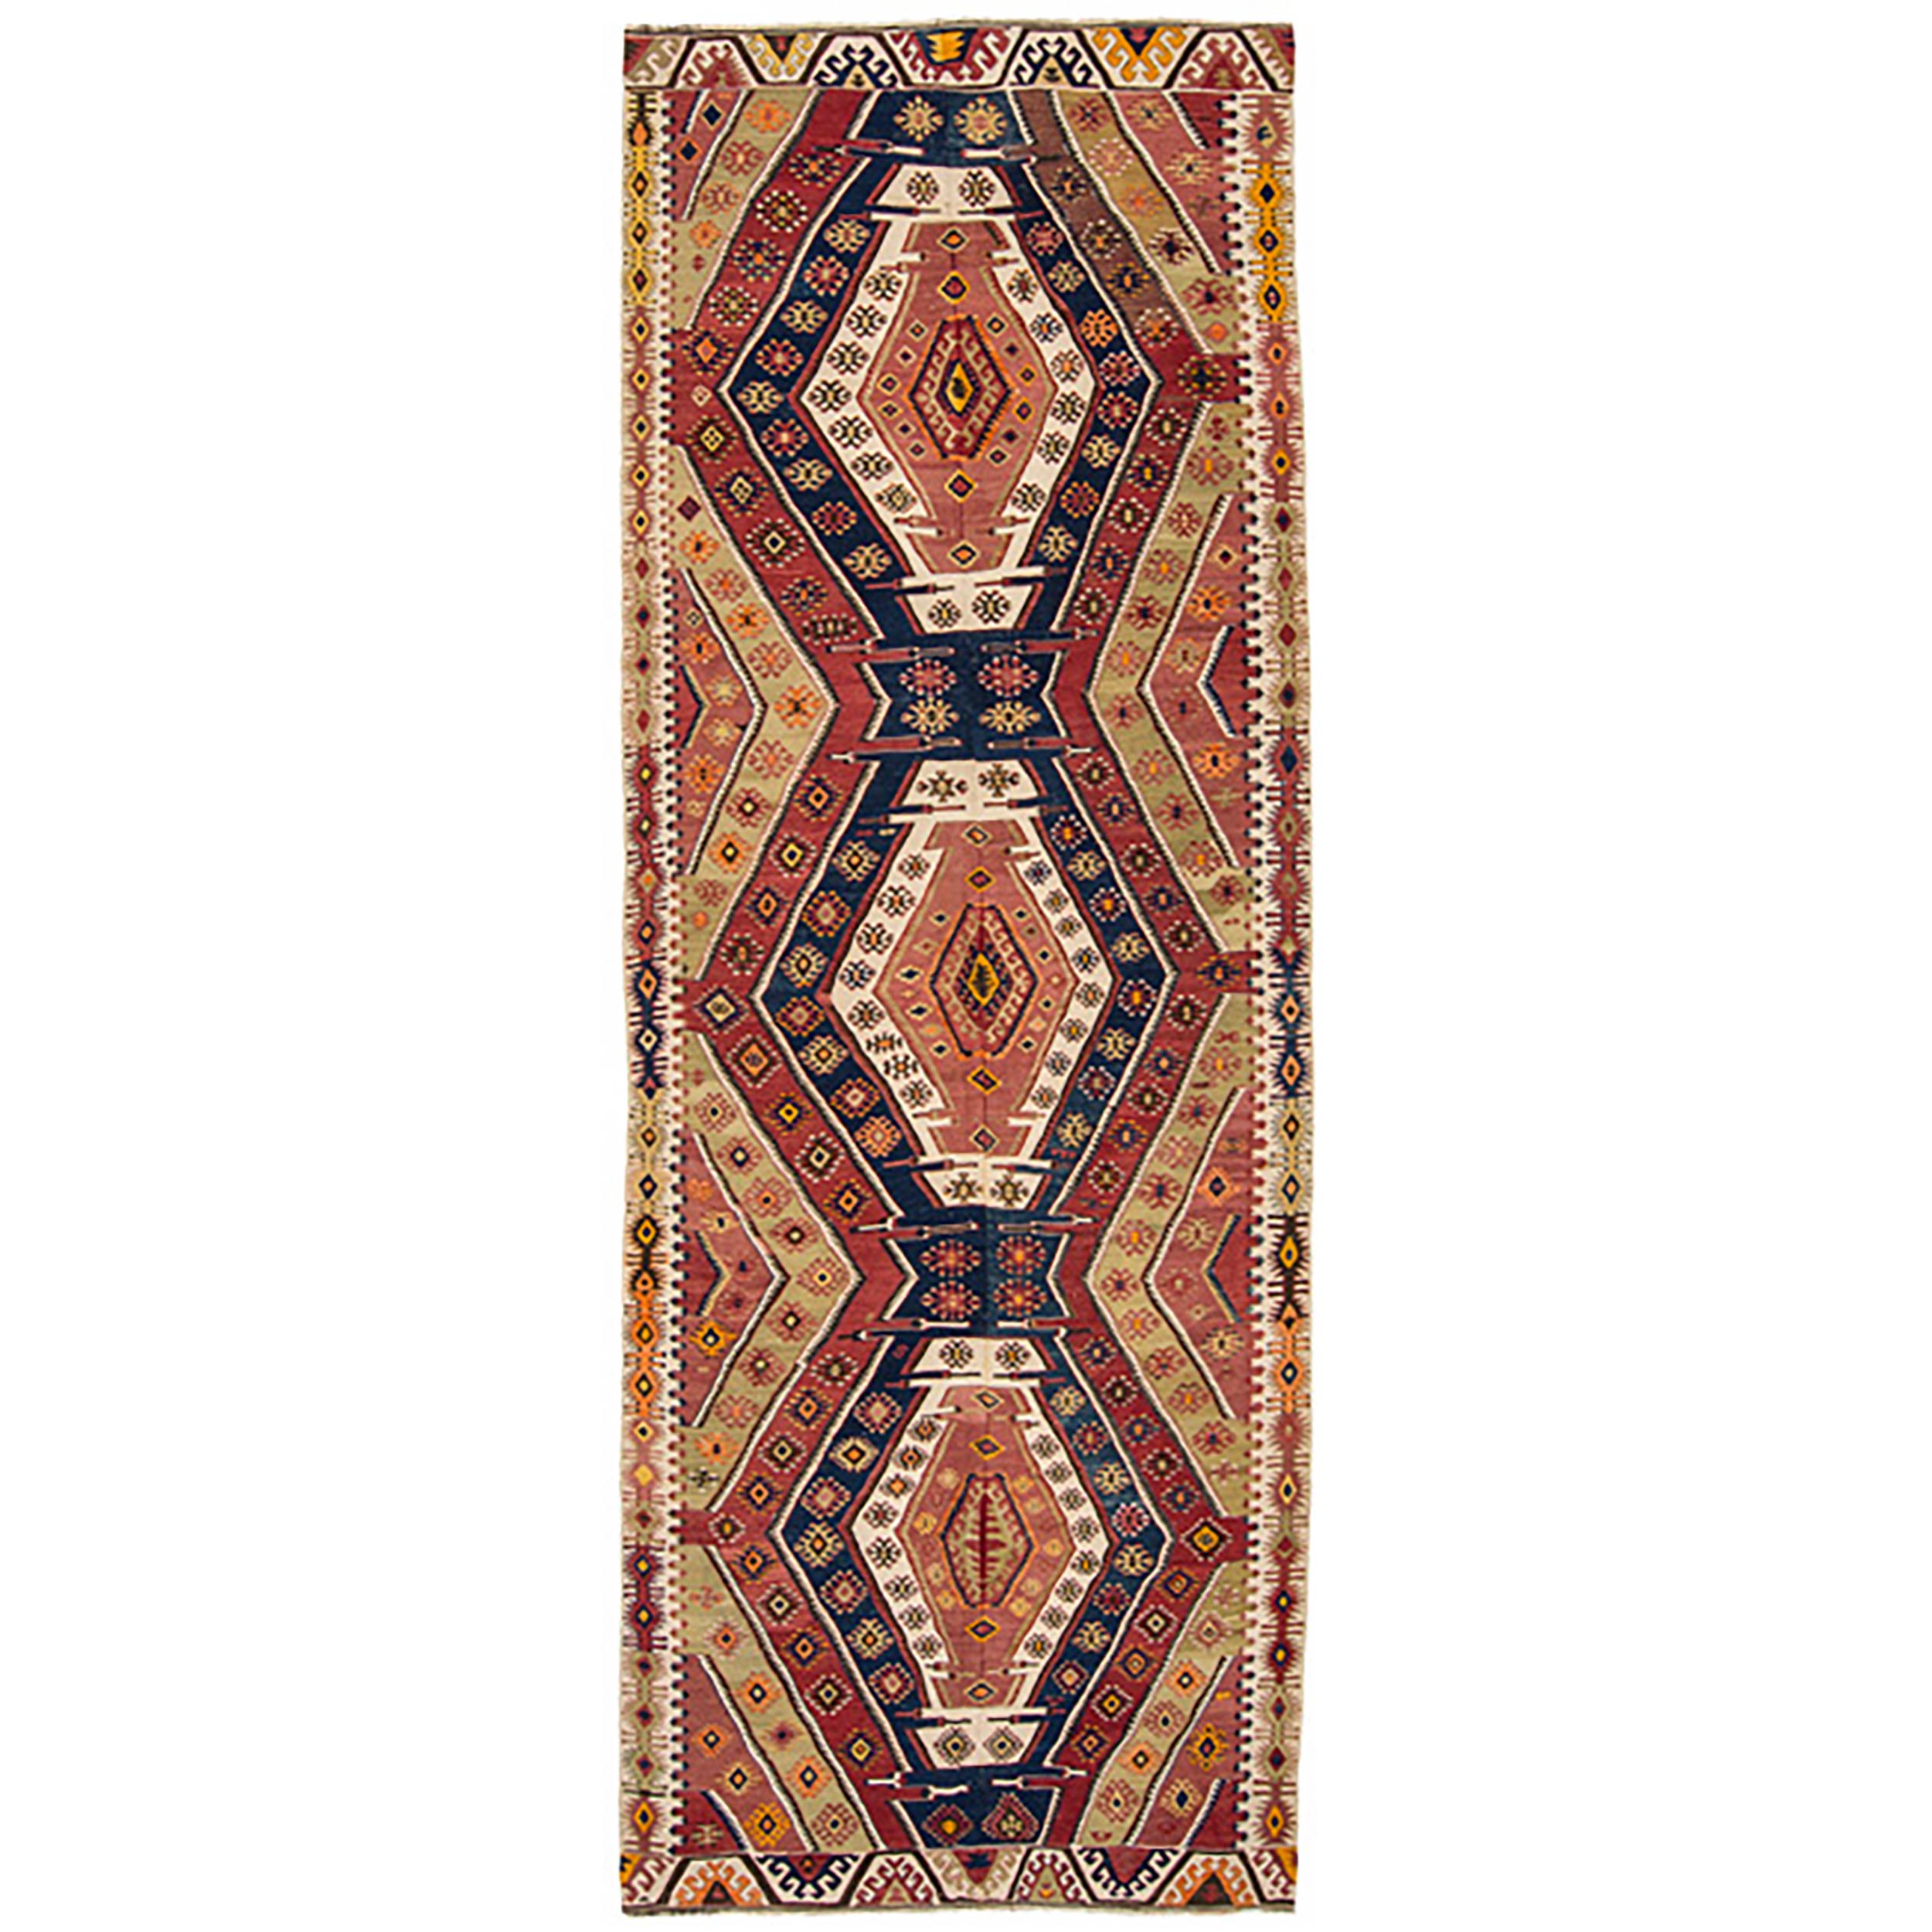 Rugs Pillow Turkish Kilim,Kilim Anatolian Wool Vintage Cicim Kilim 2.1 x 3.2 Feet Carpet, Rug 103x74 Cm Kilims